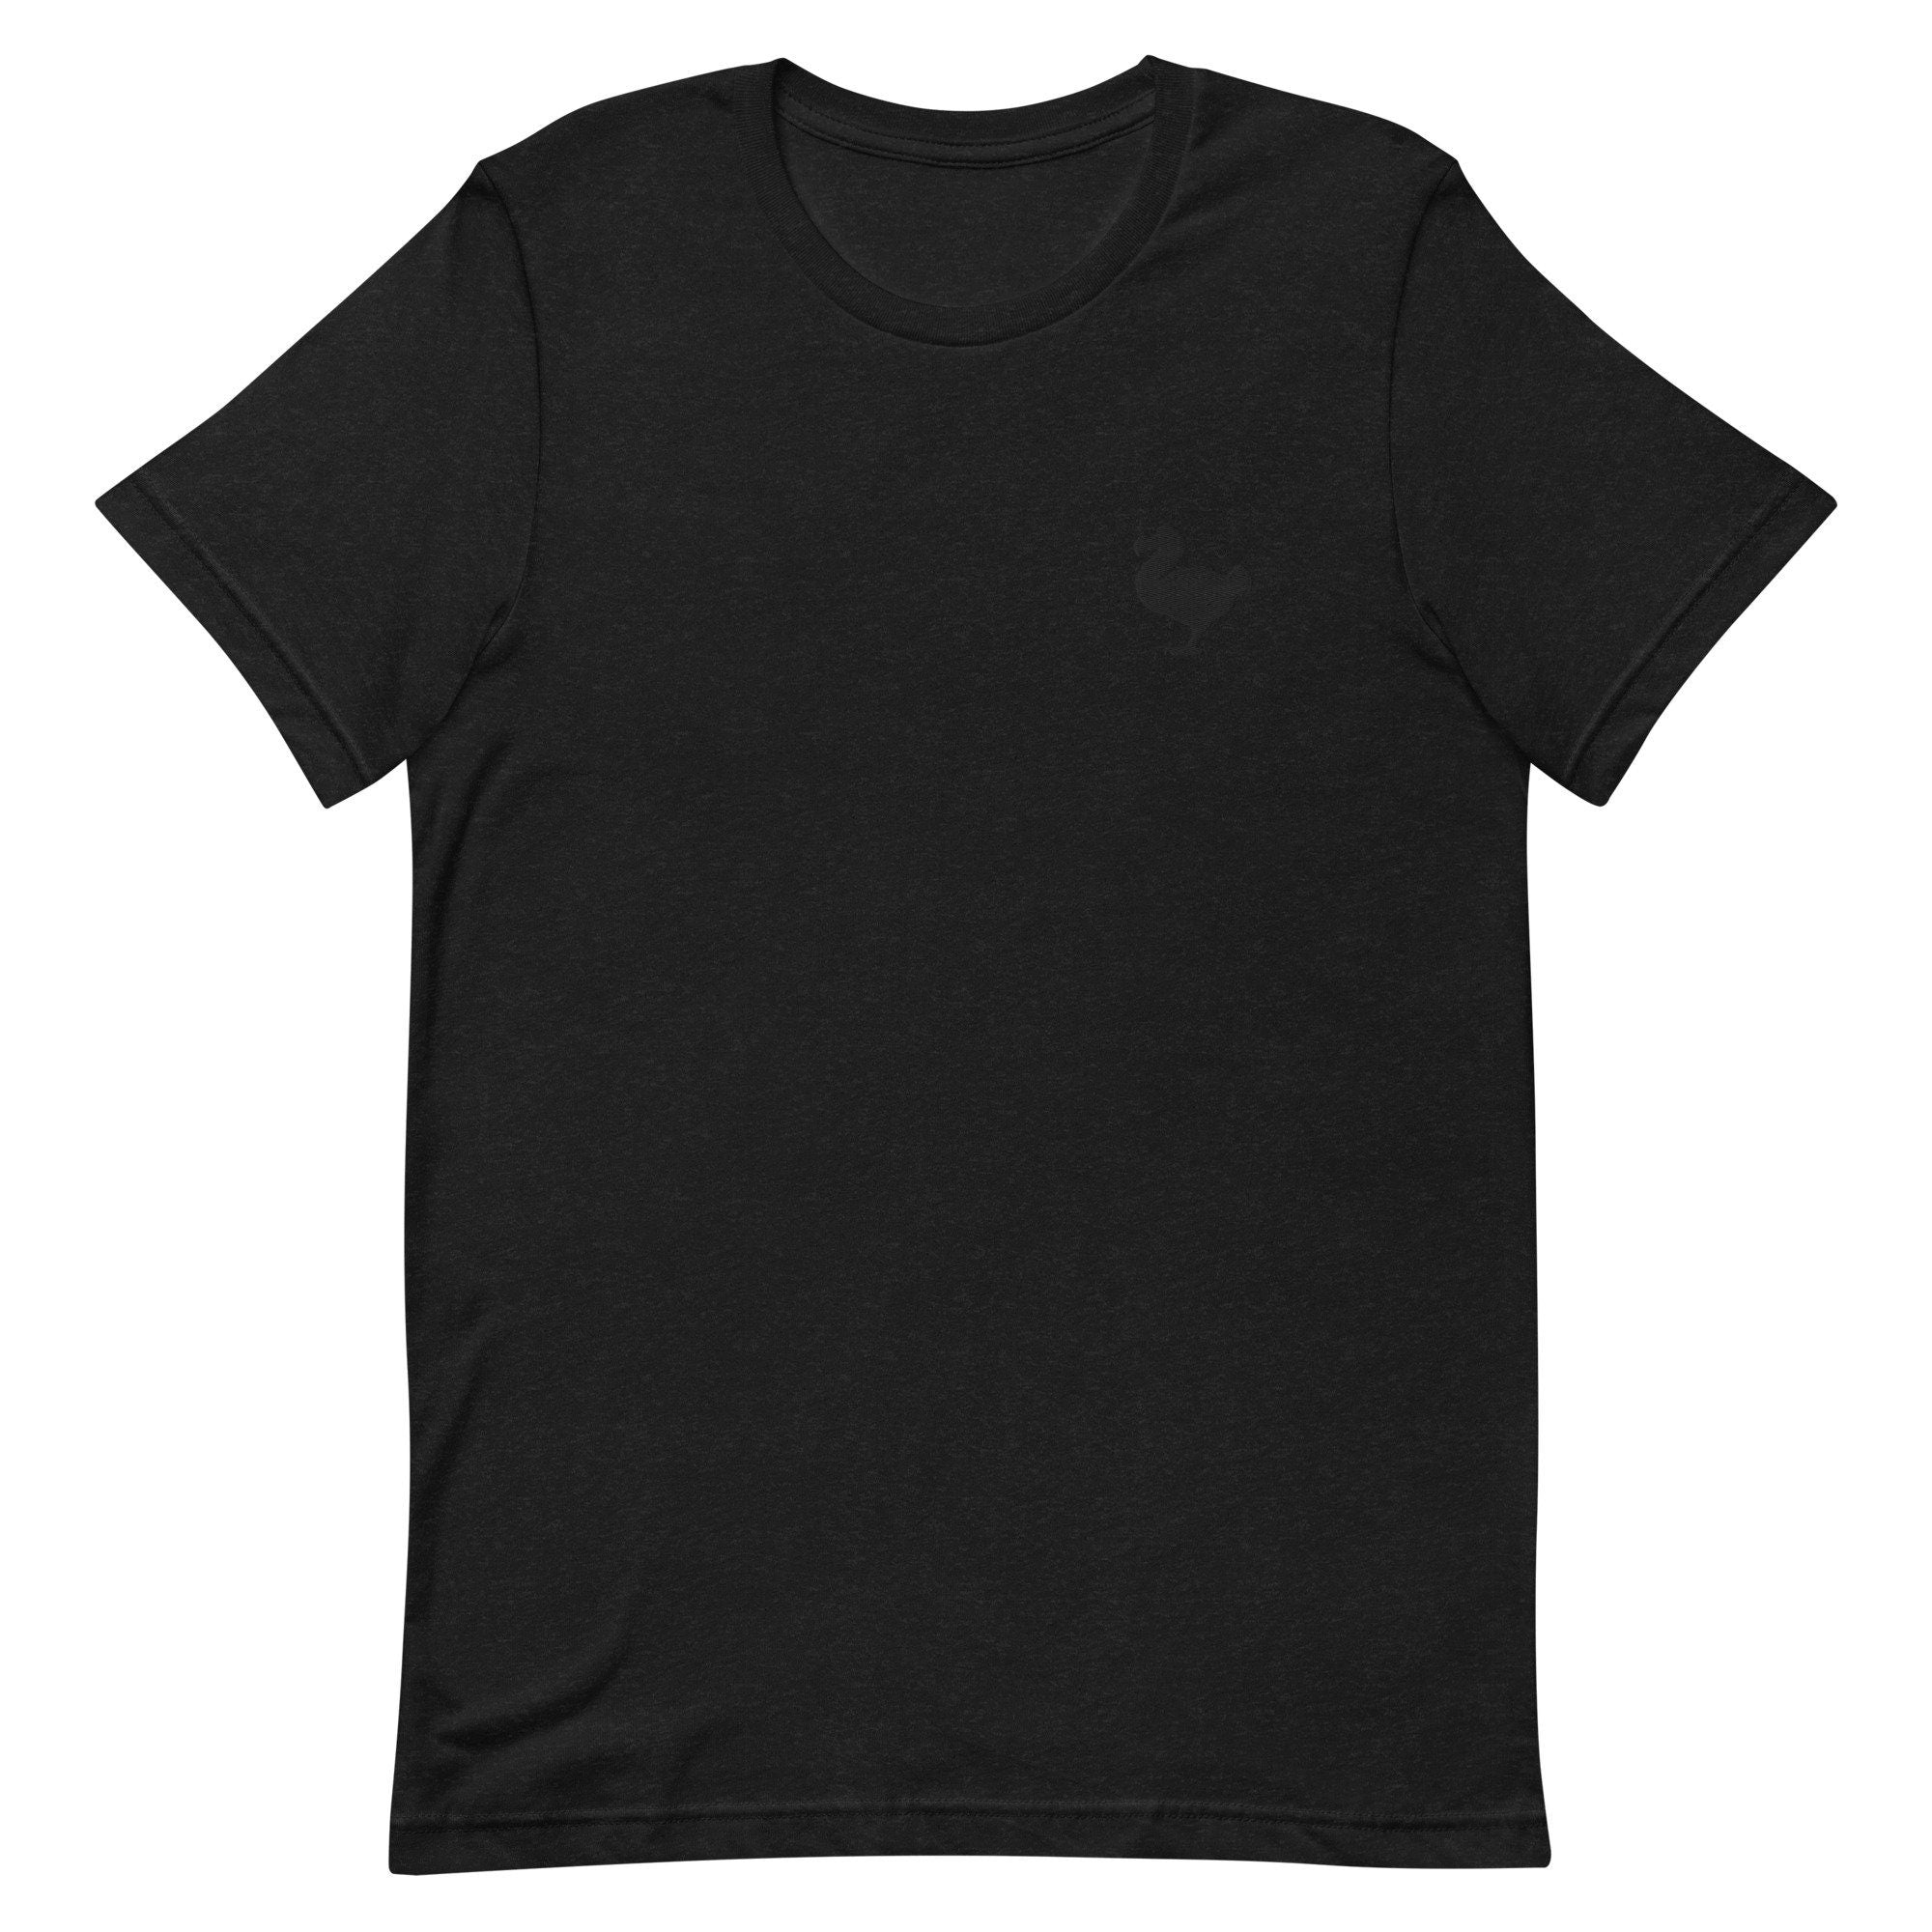 Dodo Bird Premium Men's T-Shirt, Embroidered Men's T-Shirt Gift for Boyfriend, Men's Short Sleeve Shirt - Multiple Colors